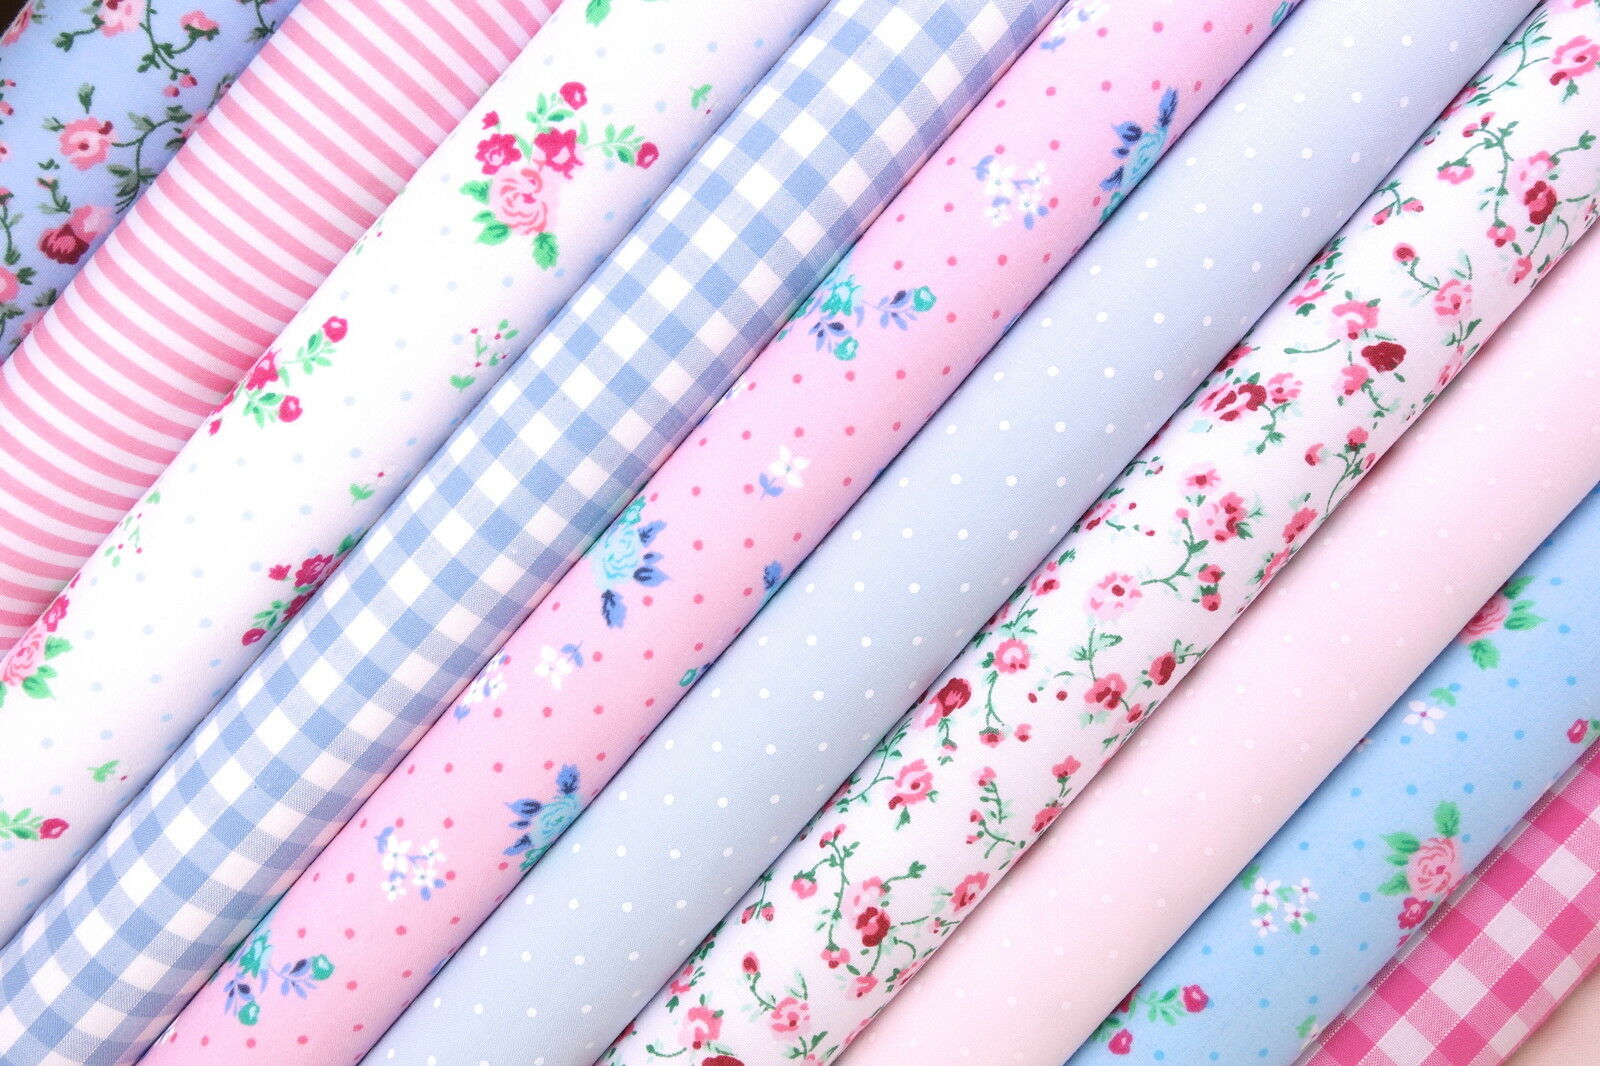 10 x Polycotton Fat Quarter Fabric Bundle | Pink Blue Floral Gingham Spotty Plain Stripes